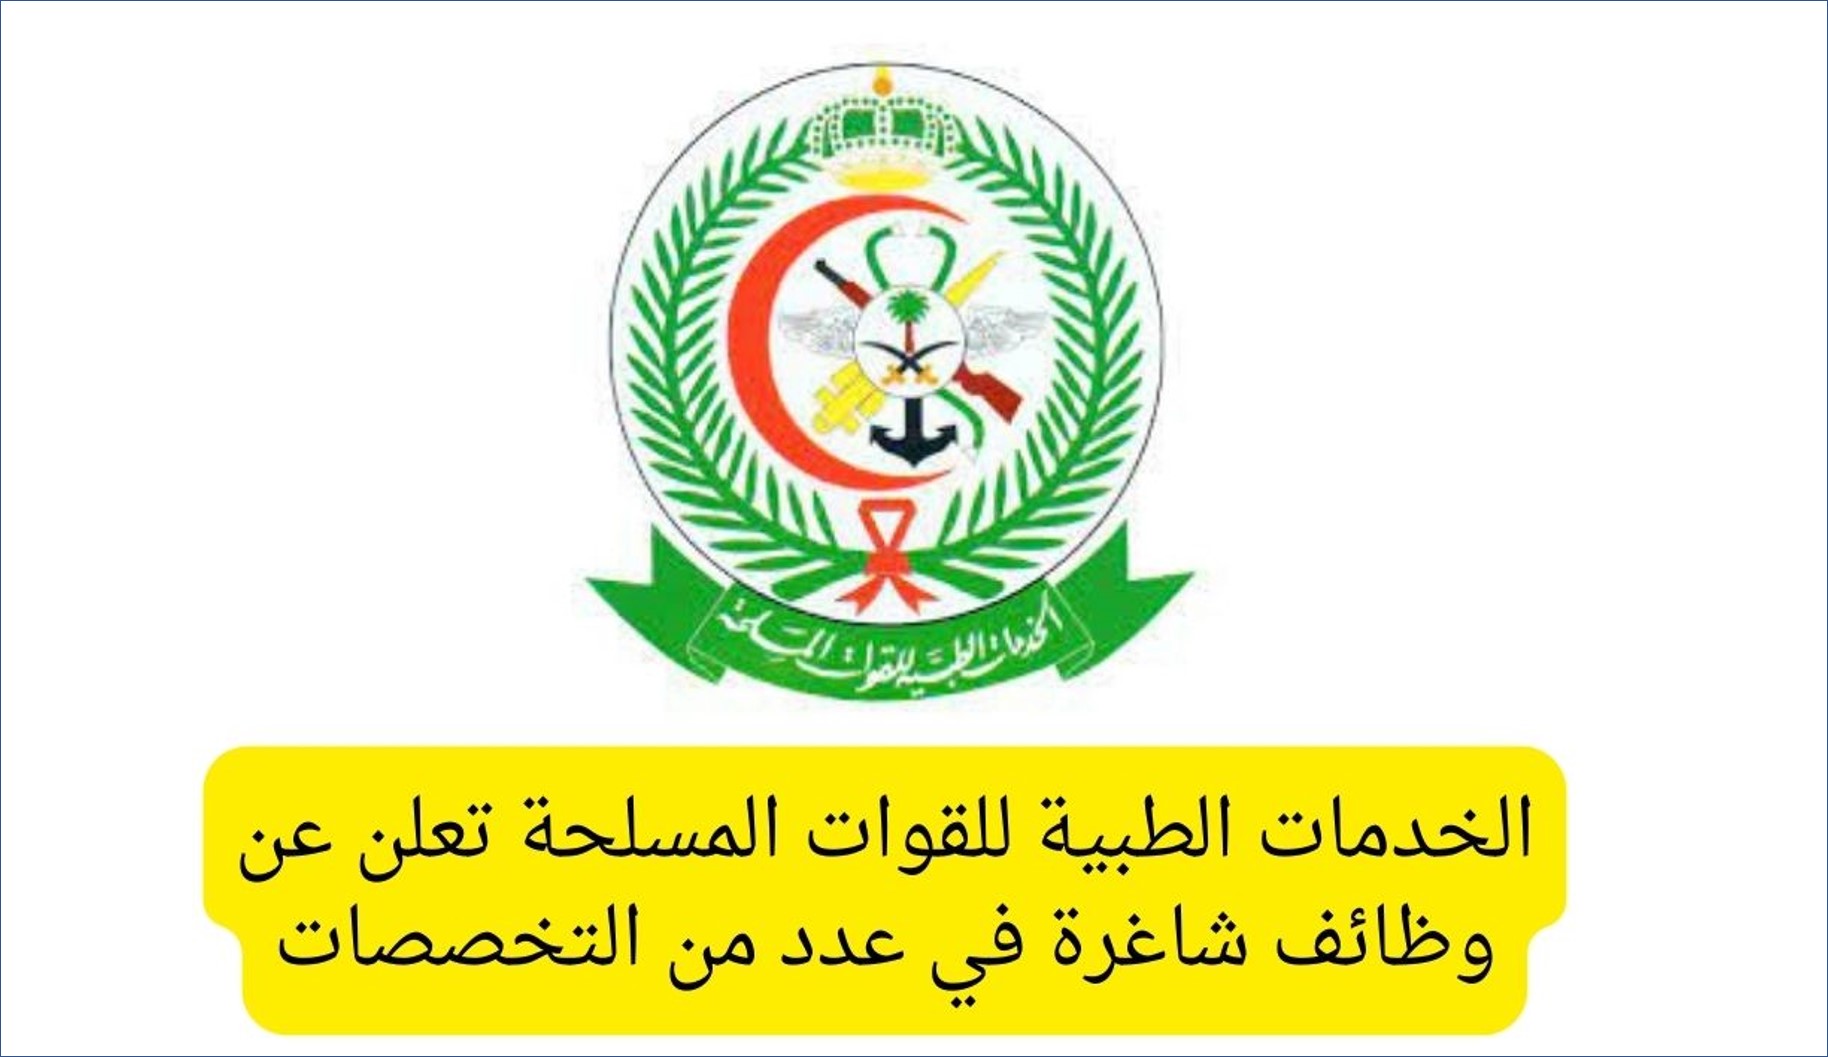  133 وظيفة في الخدمات الطبية للقوات المسلحة في السعودية للرجال والنساء : هنا رابط التقديم